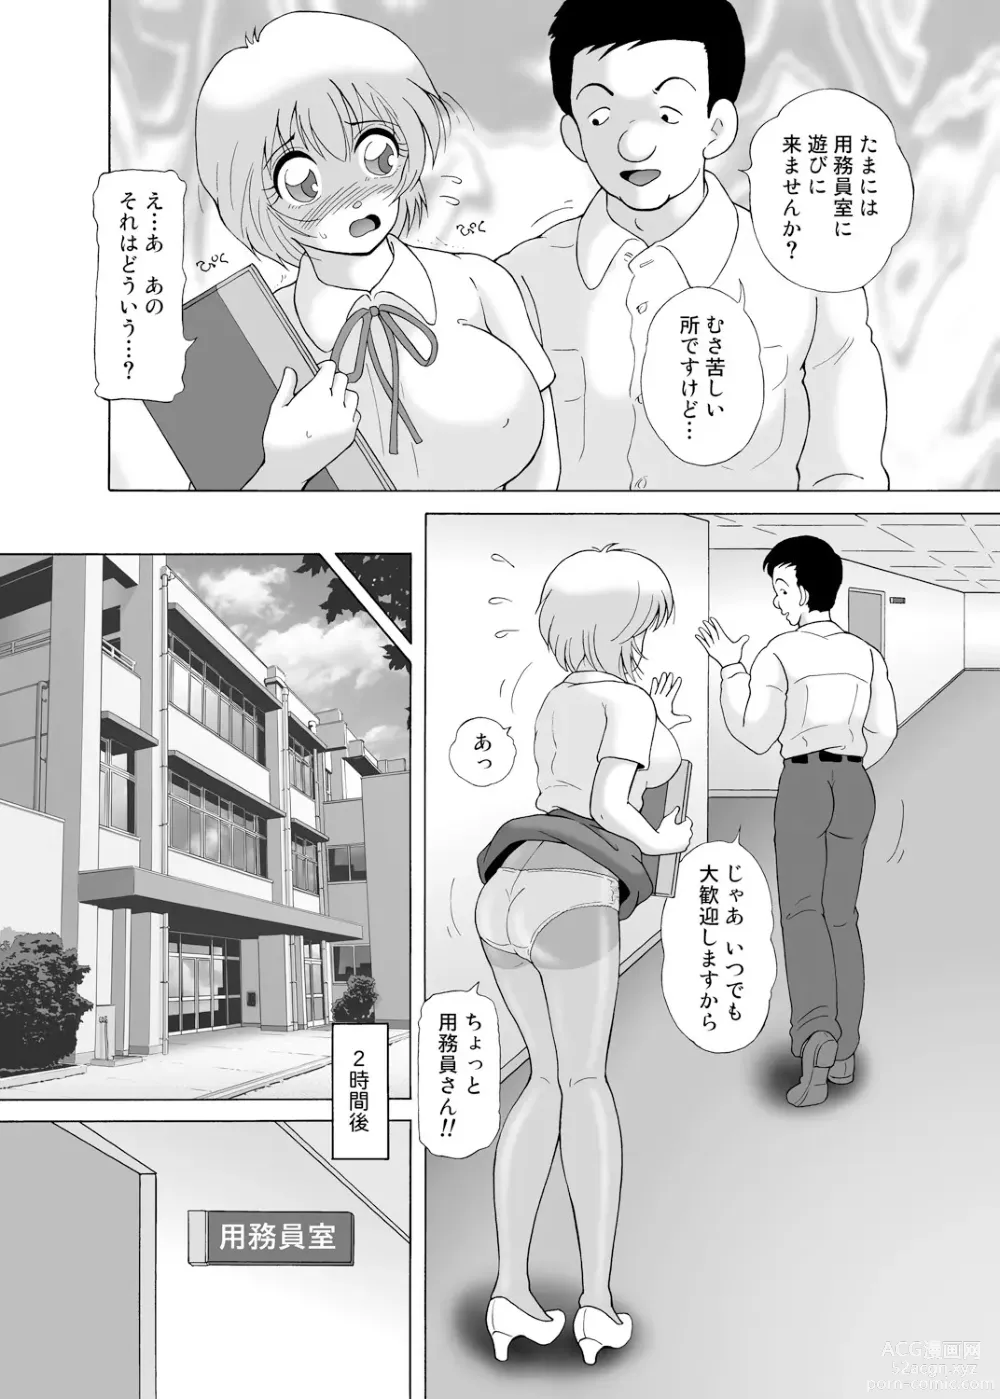 Page 16 of manga Yachin Tainou Bijin Shimai Kyousei Nikutai Harai